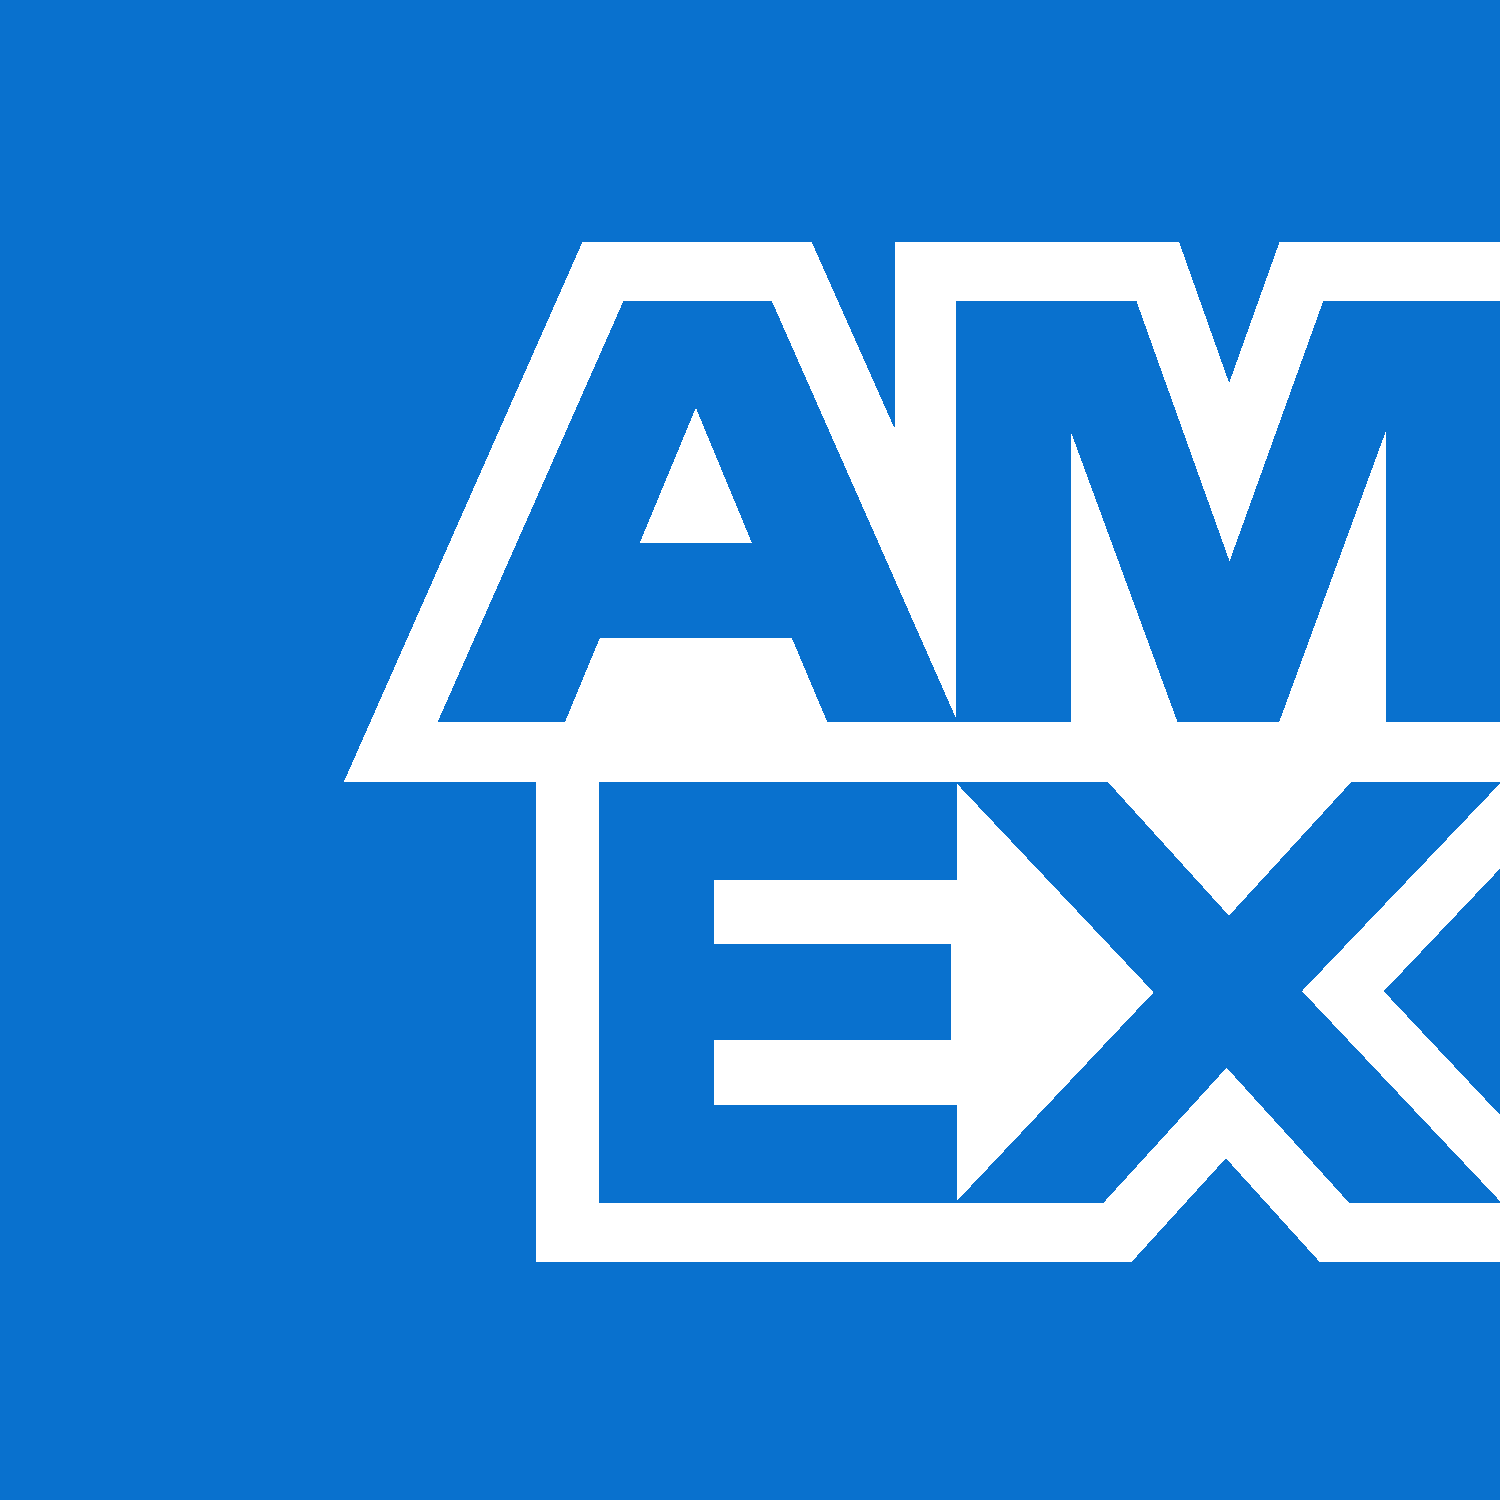 American express logo logo